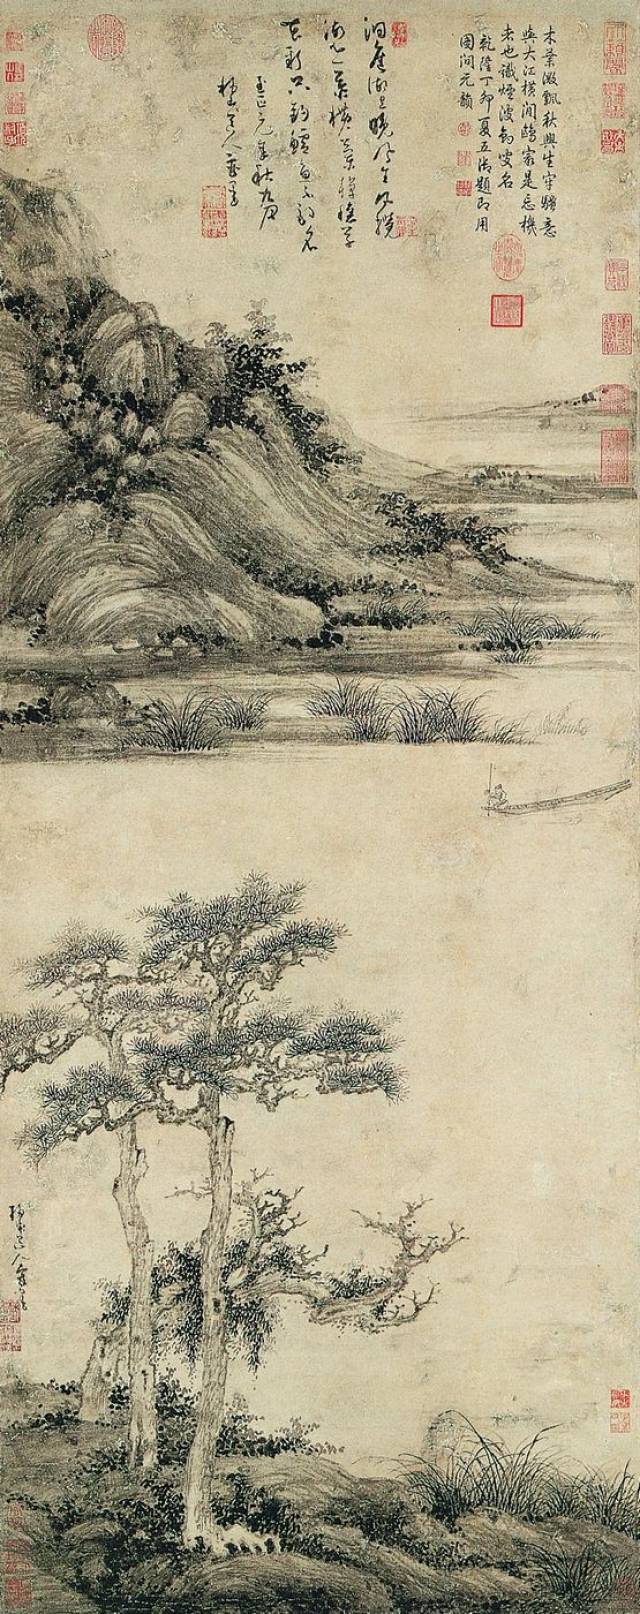 08 作者简介:吴镇( 公元1280-1354 年) 元代画家.